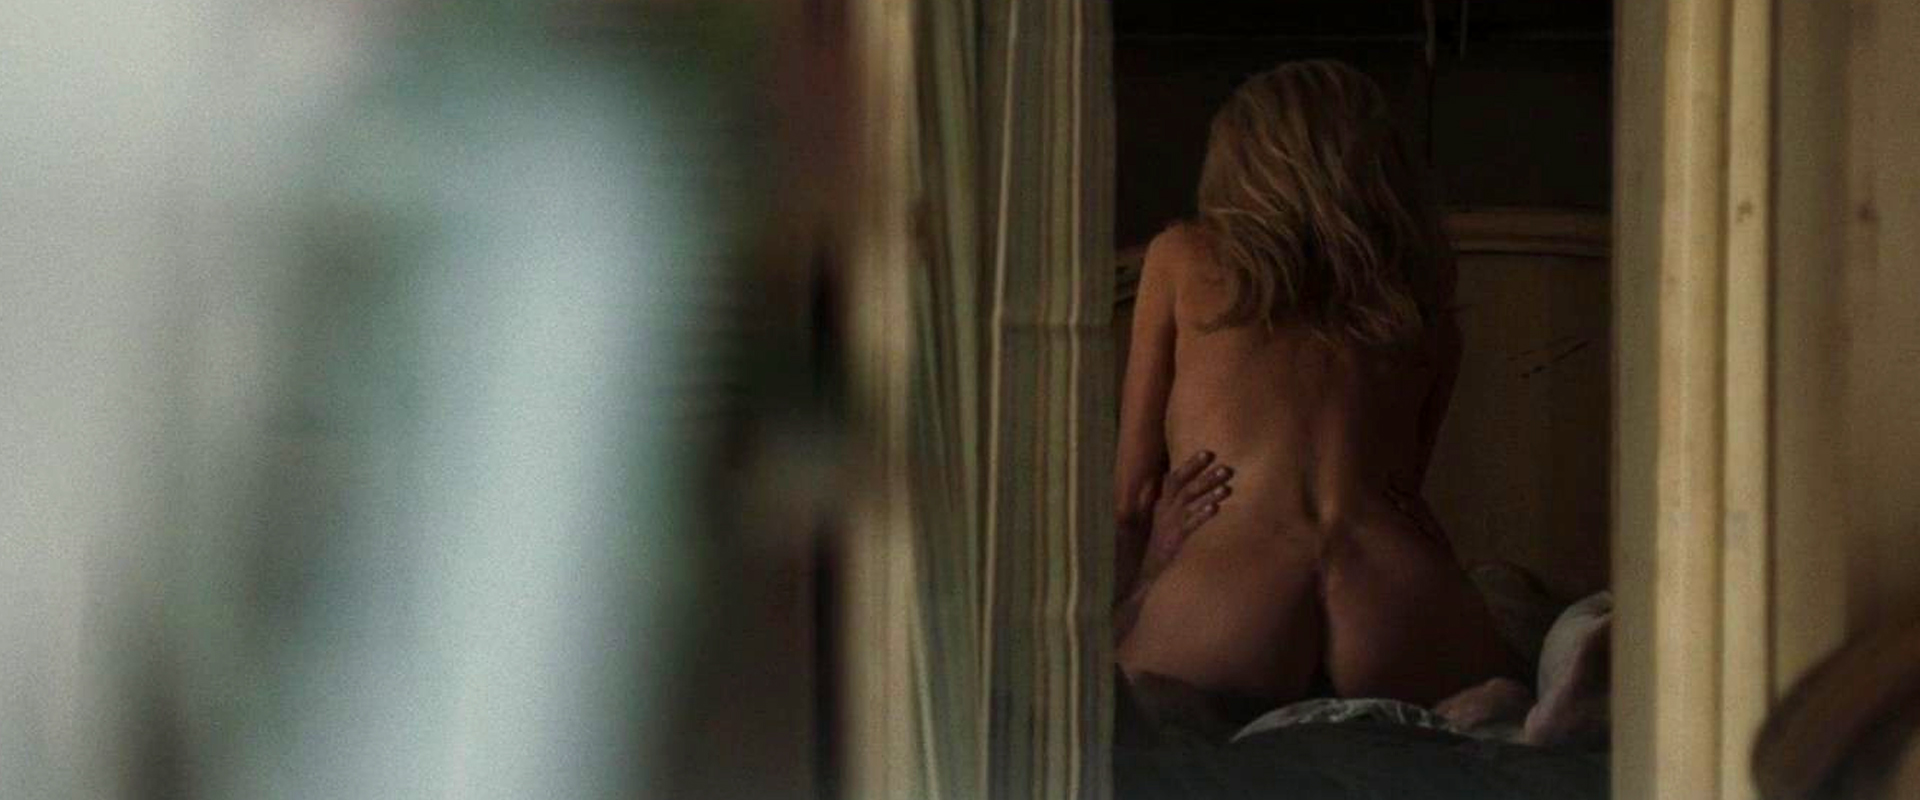 Kim Basinger - The Burning Plain (2008, body doubler ...